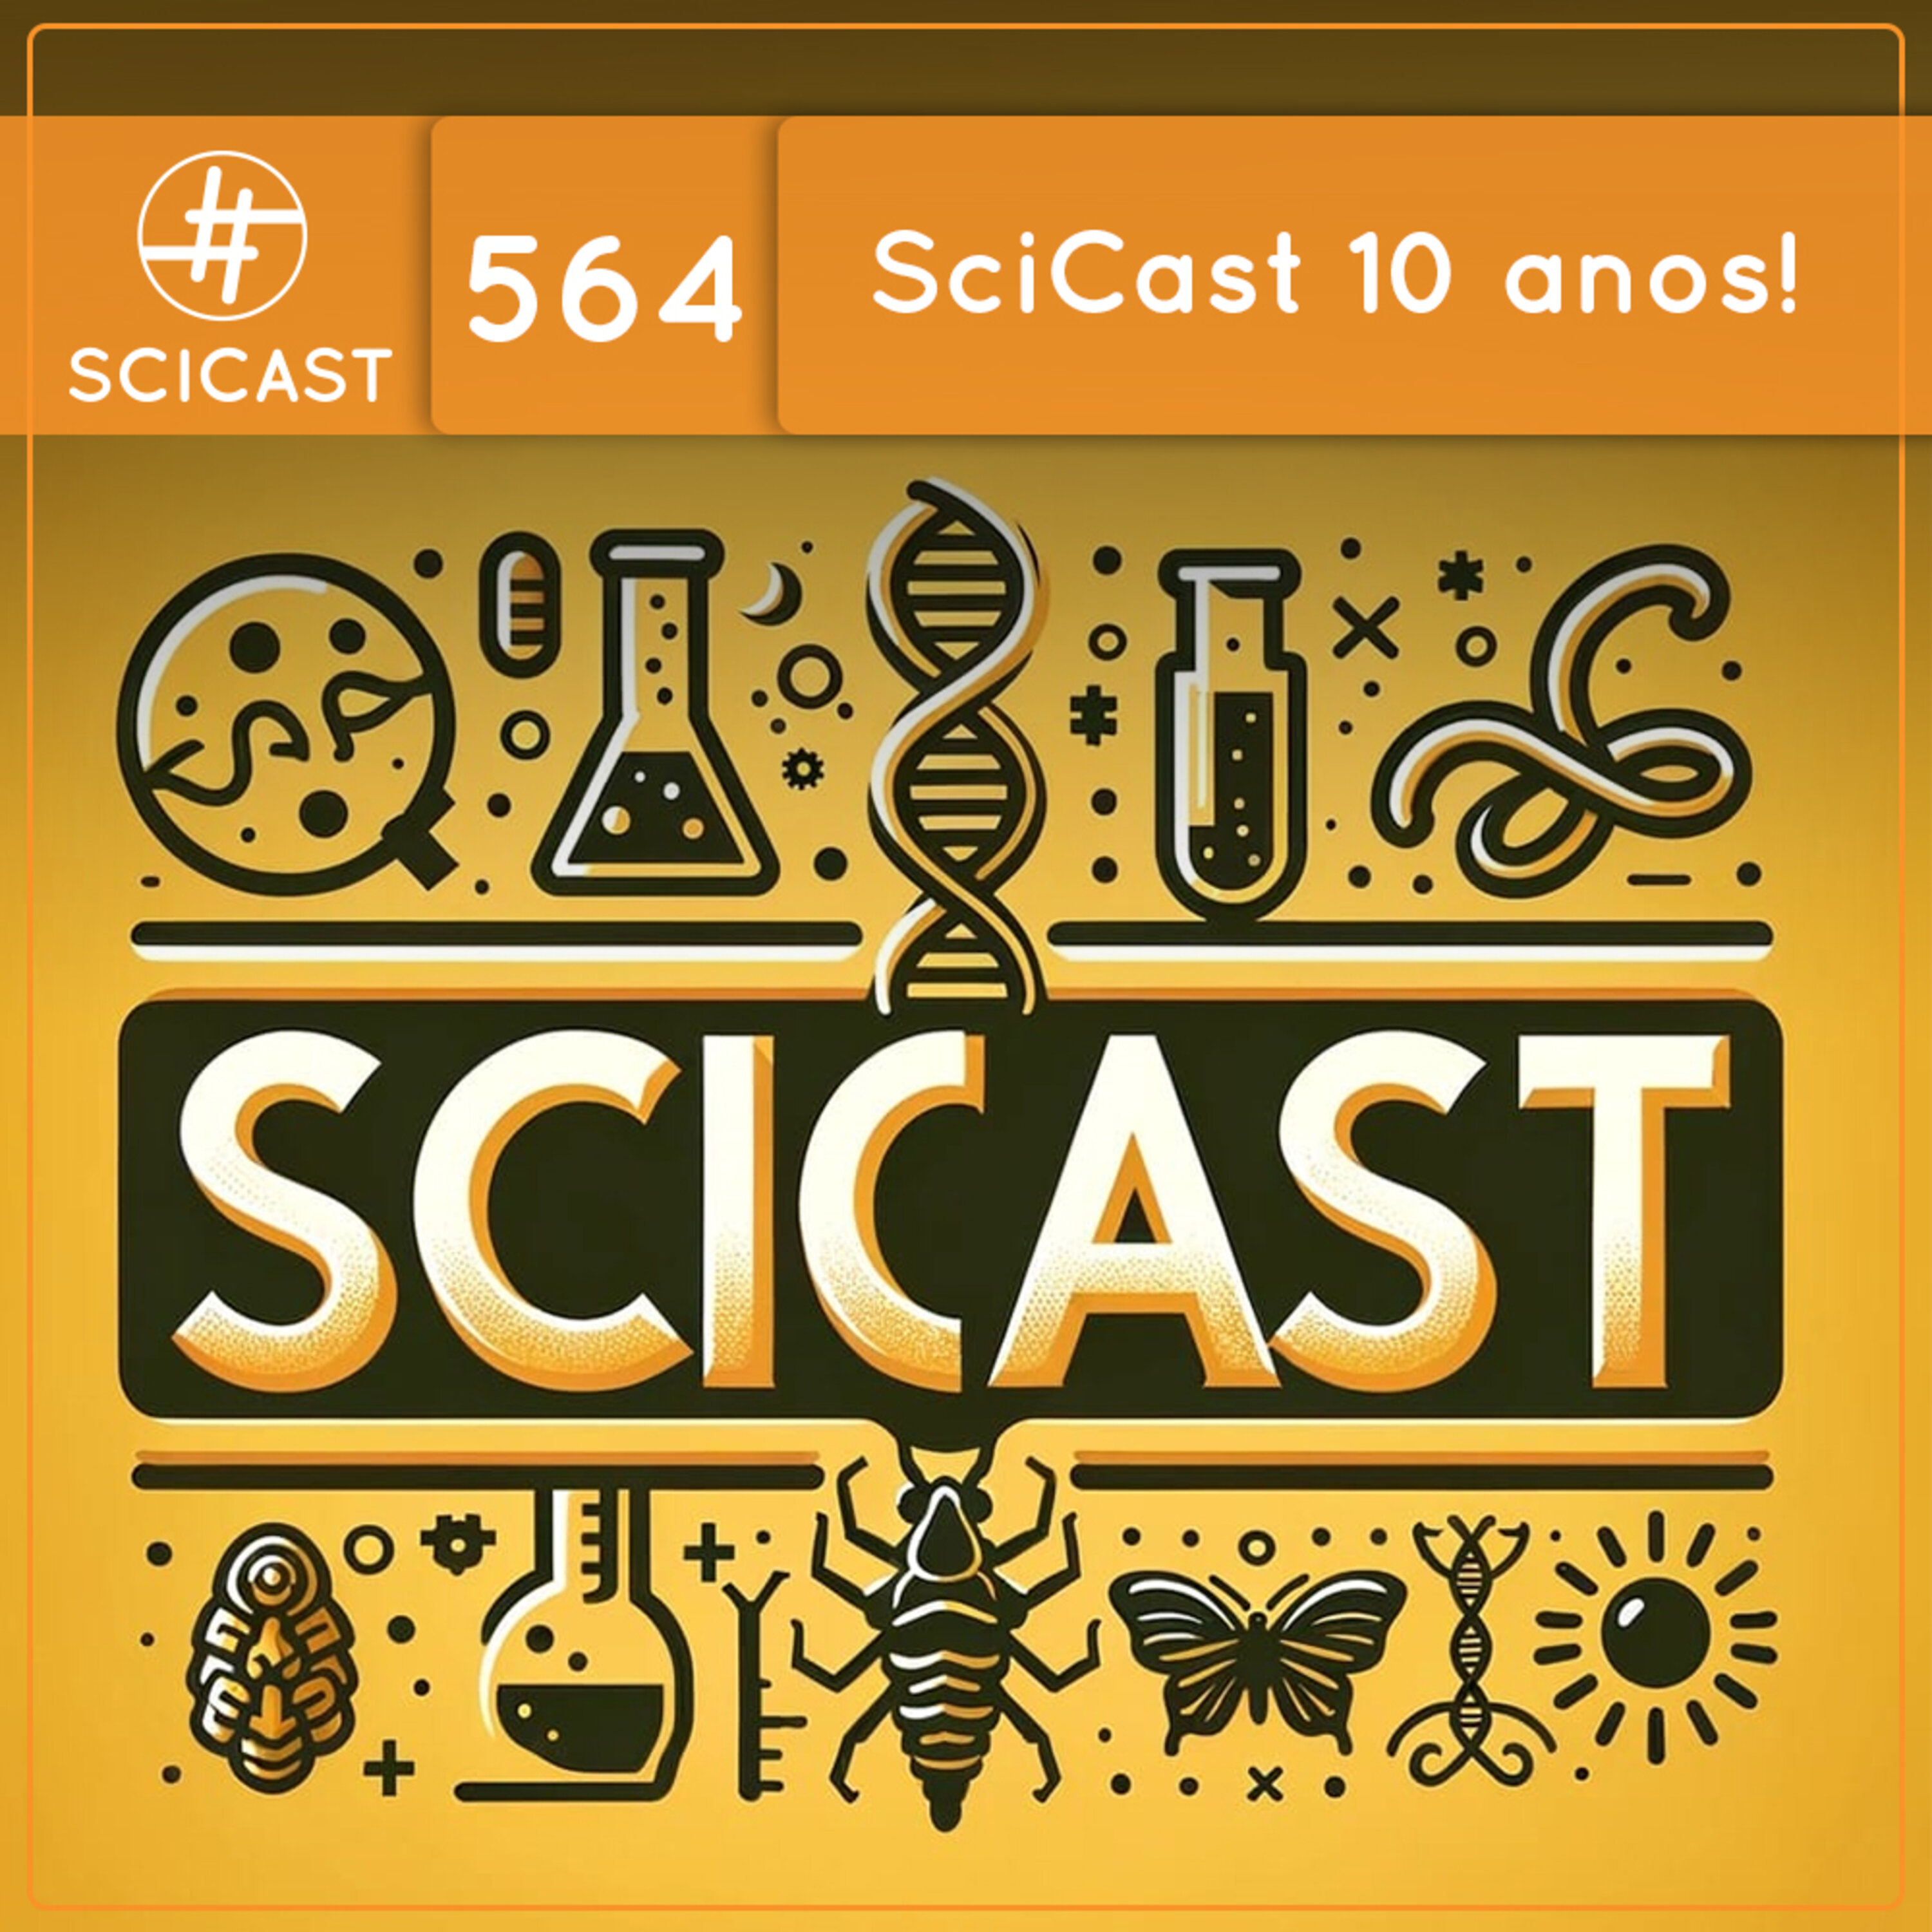 SciCast 10 anos (SciCast #564)